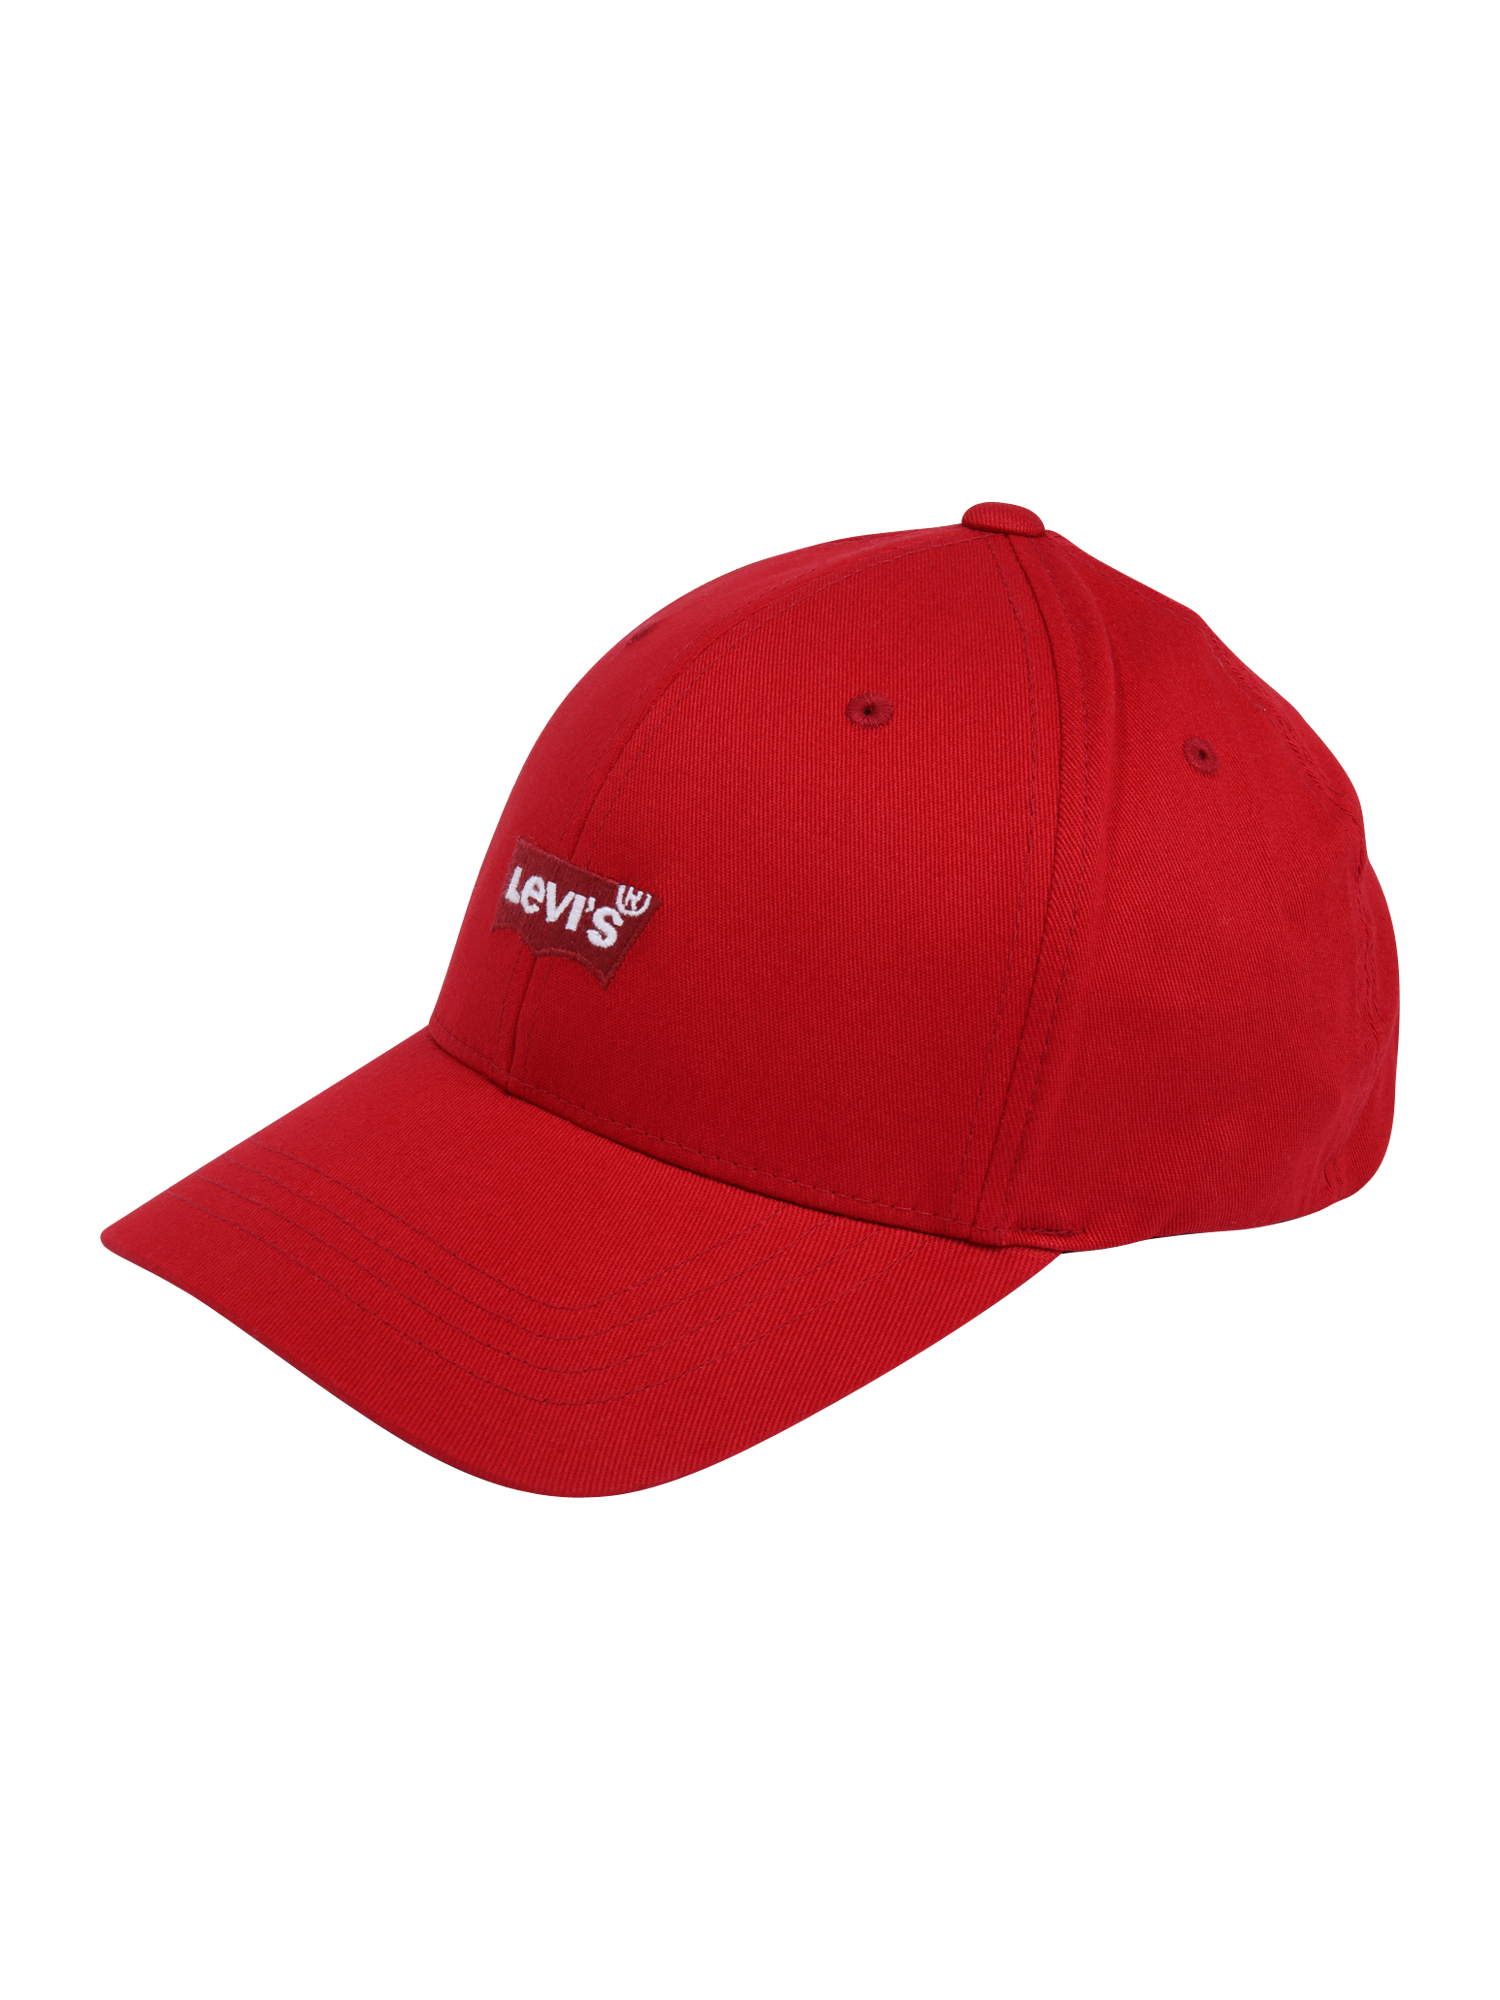 Cappelli e berretti Cws8h LEVIS Cappello da baseball in Rosso Sangue, Rosso Fuoco, Rosso Rubino 